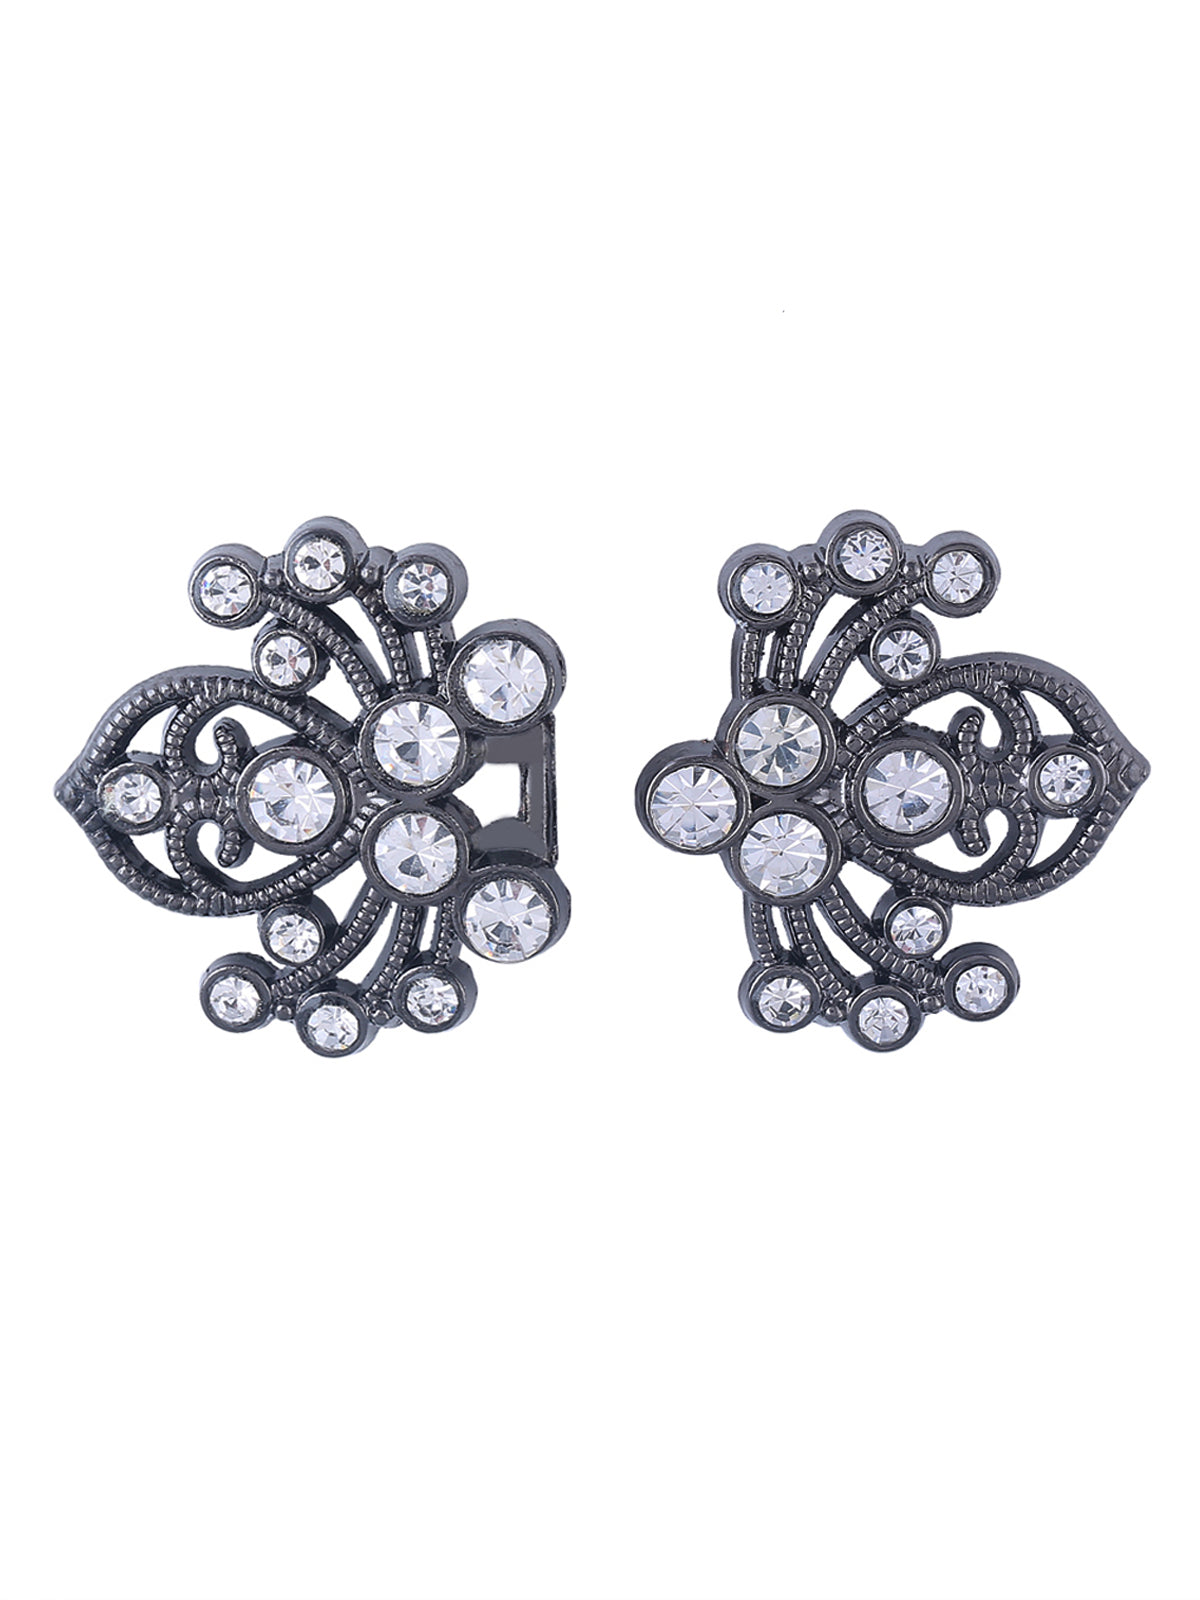 Diamond Spider Design Closure Clasp Buckle - Jhonea Accessories